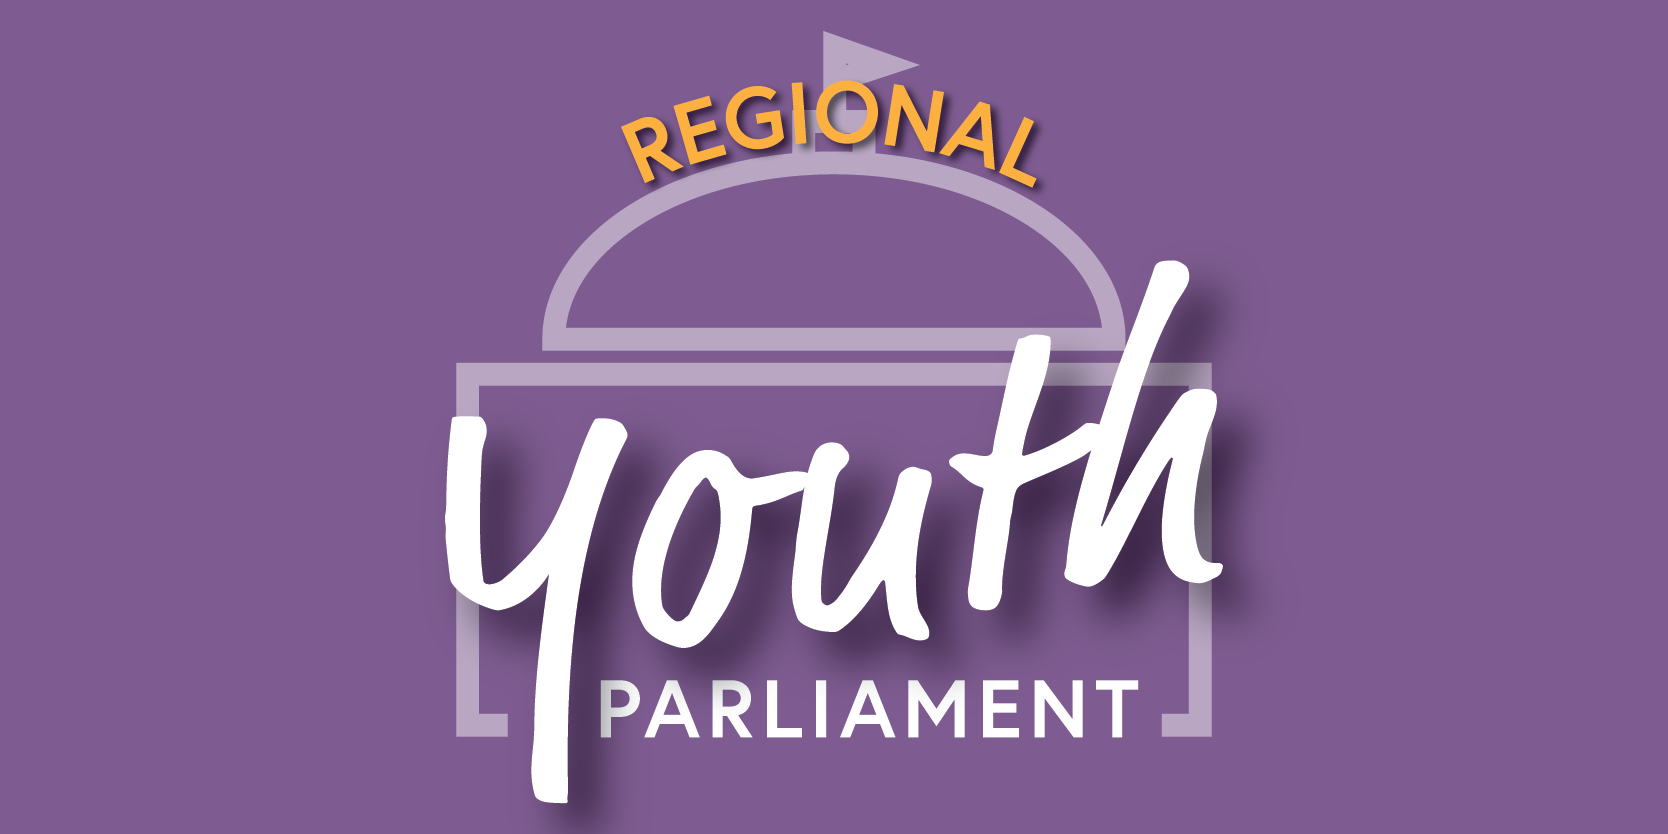 Regional Youth Parliament logo